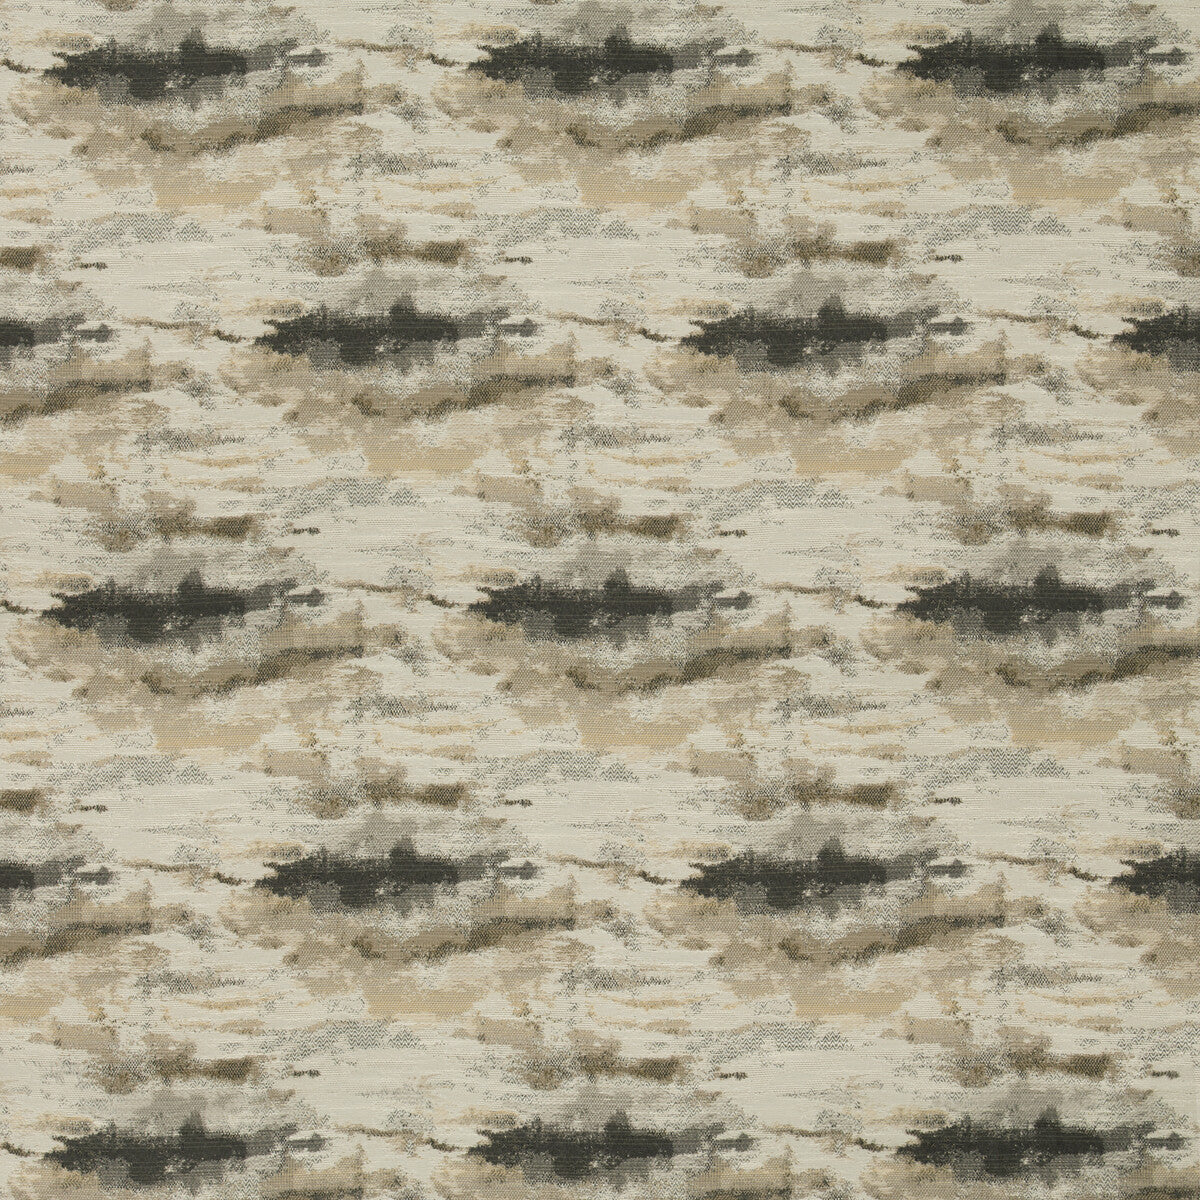 Kravet Design fabric in 35388-1621 color - pattern 35388.1621.0 - by Kravet Design